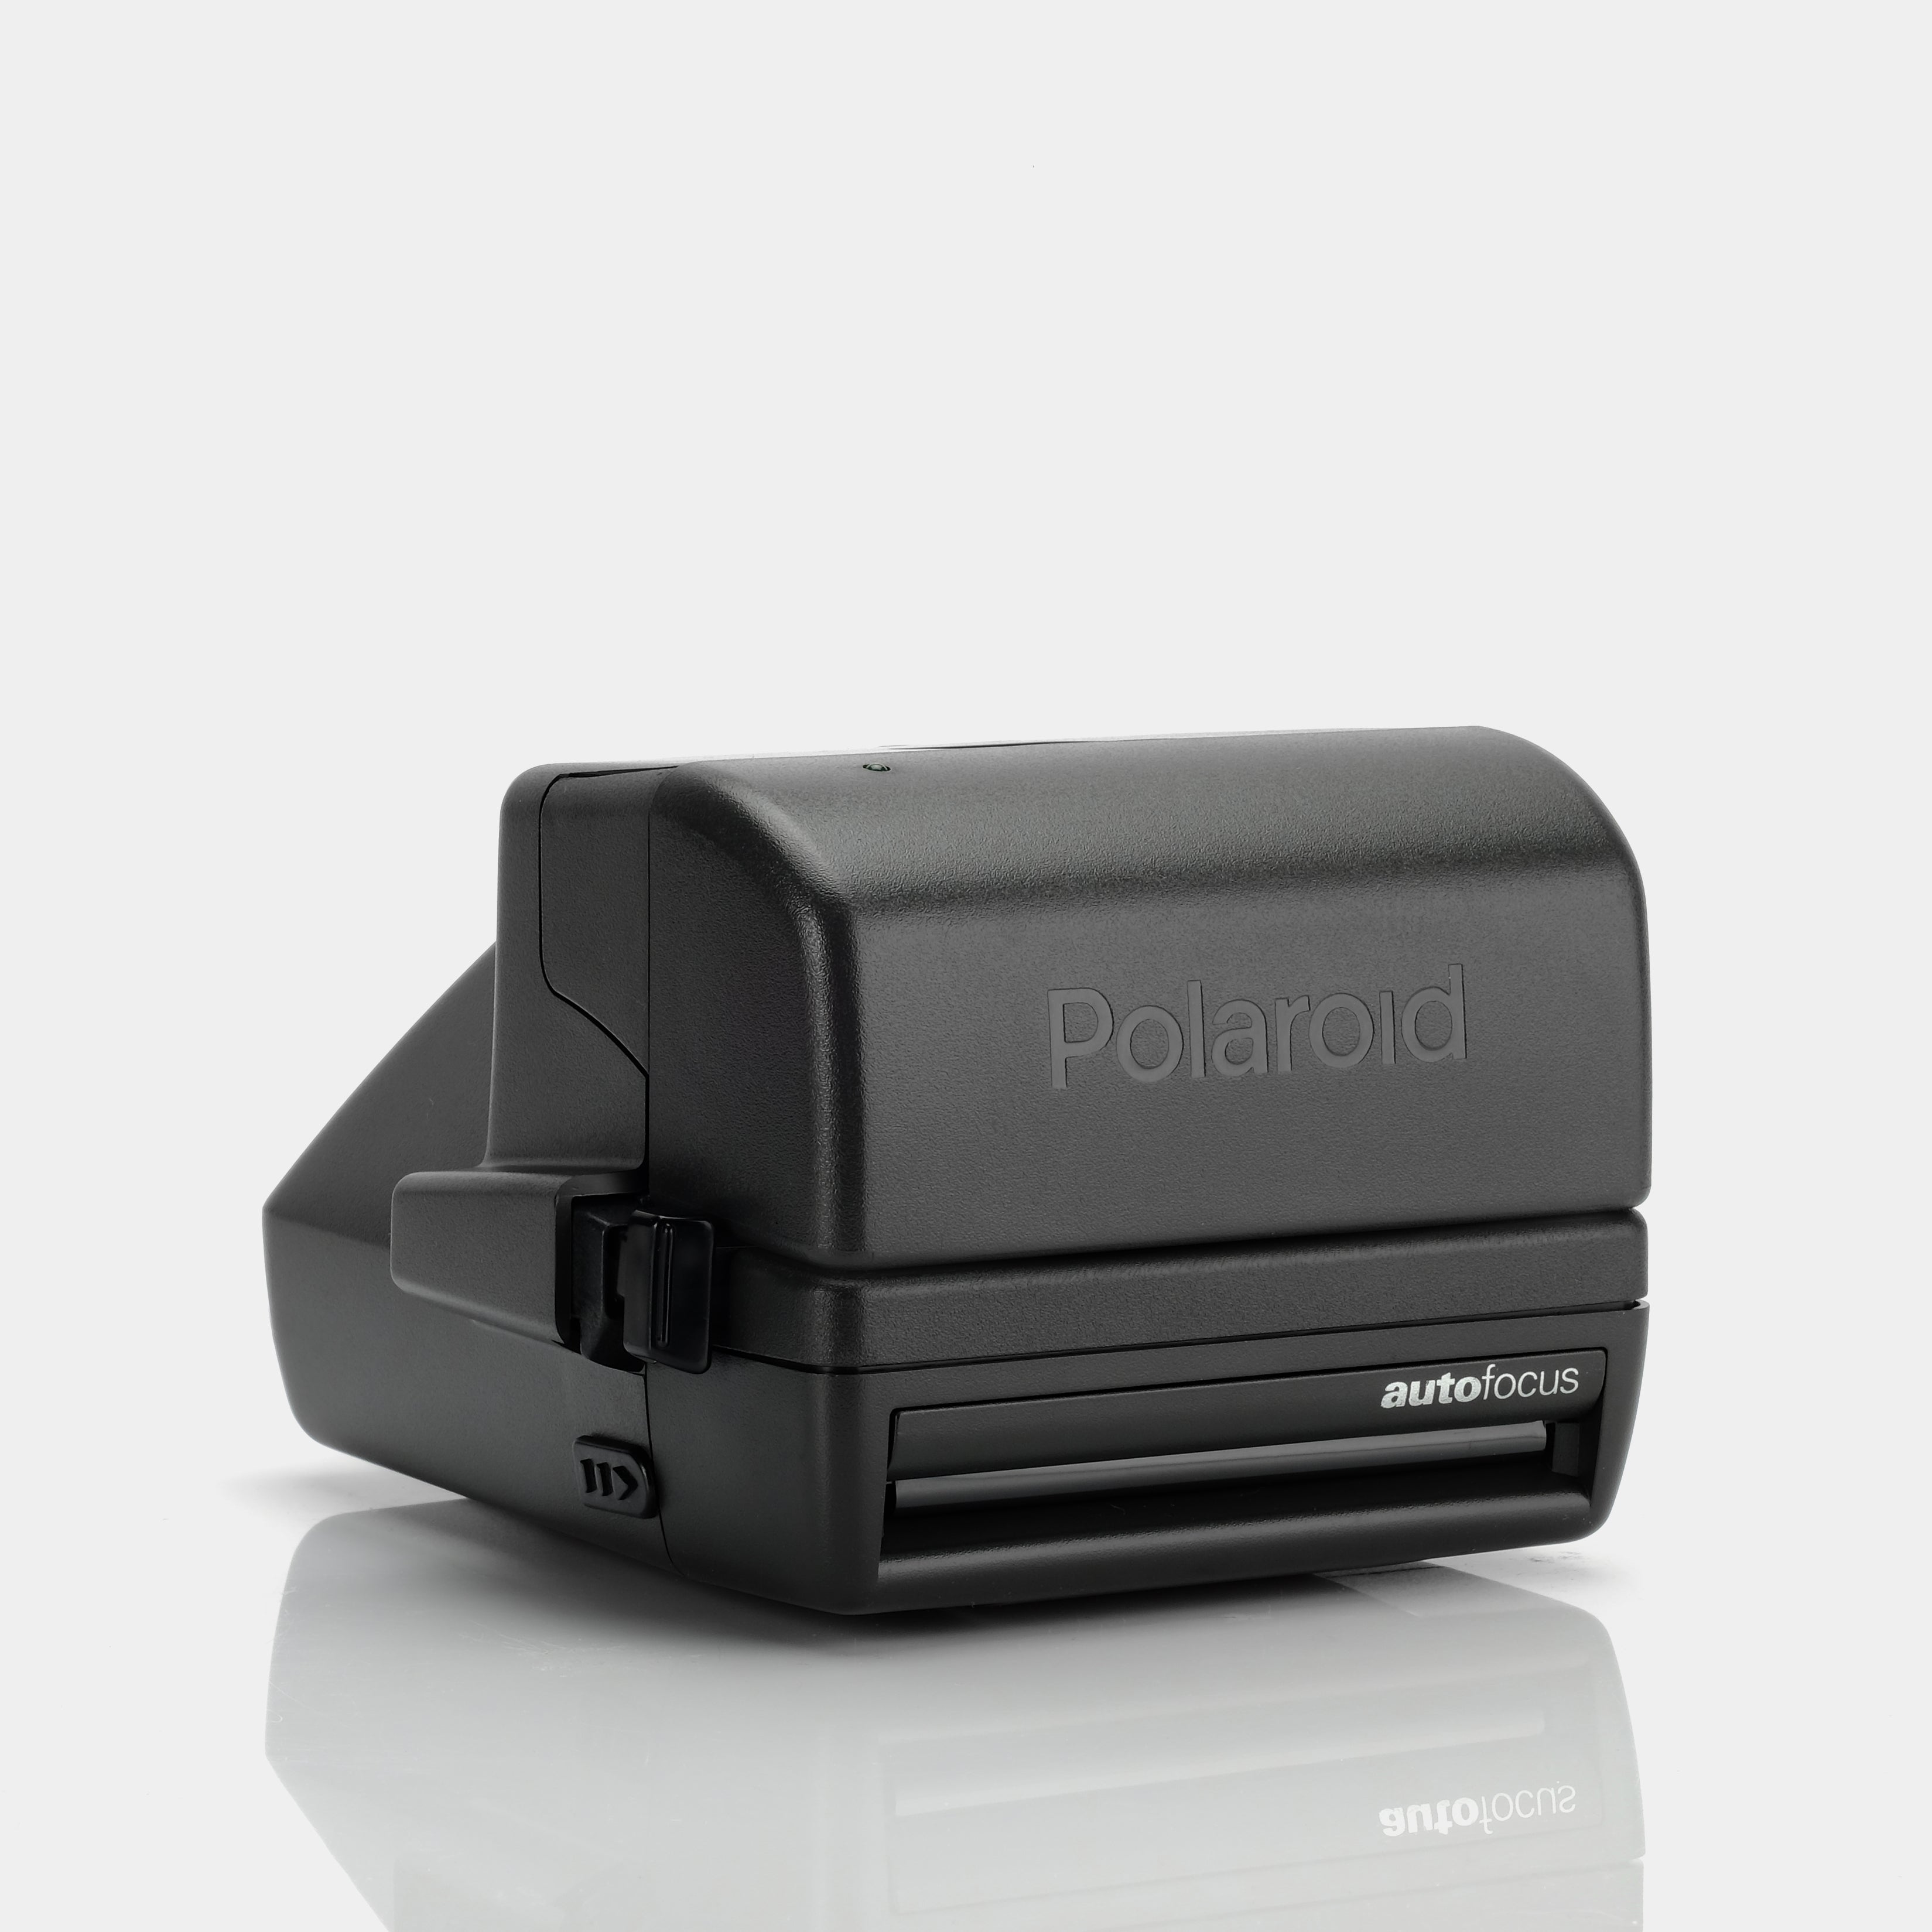 Polaroid 600 636 Autofocus 600 Instant Film Camera